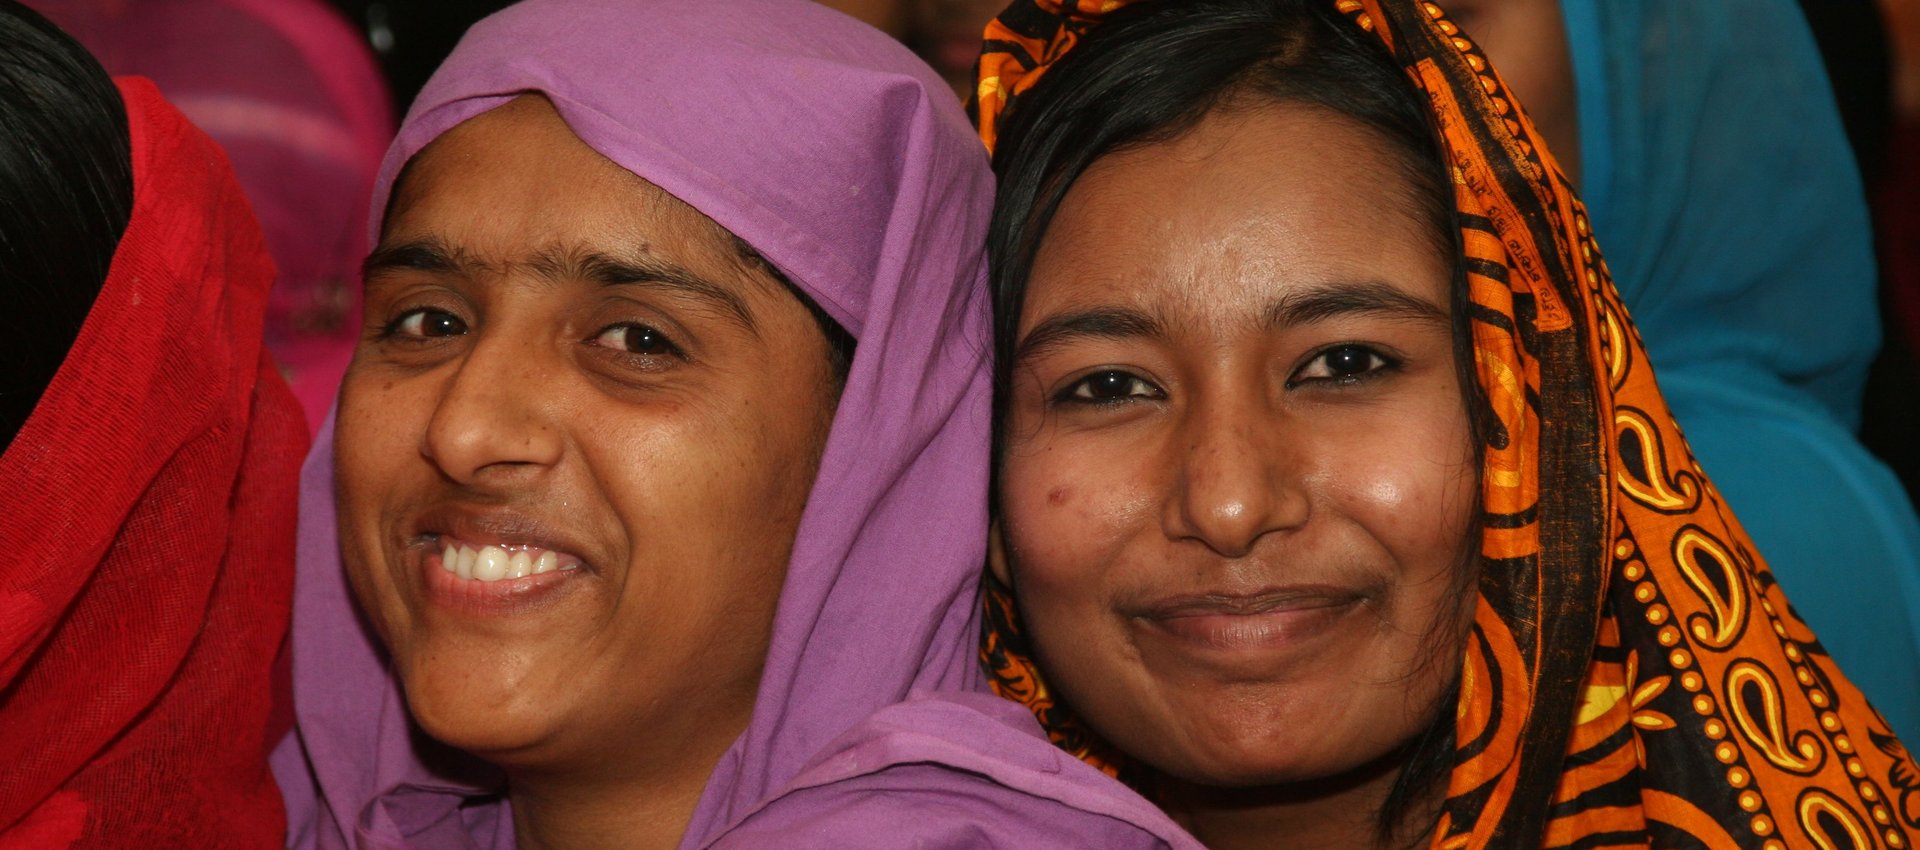 bangladesh women smiling